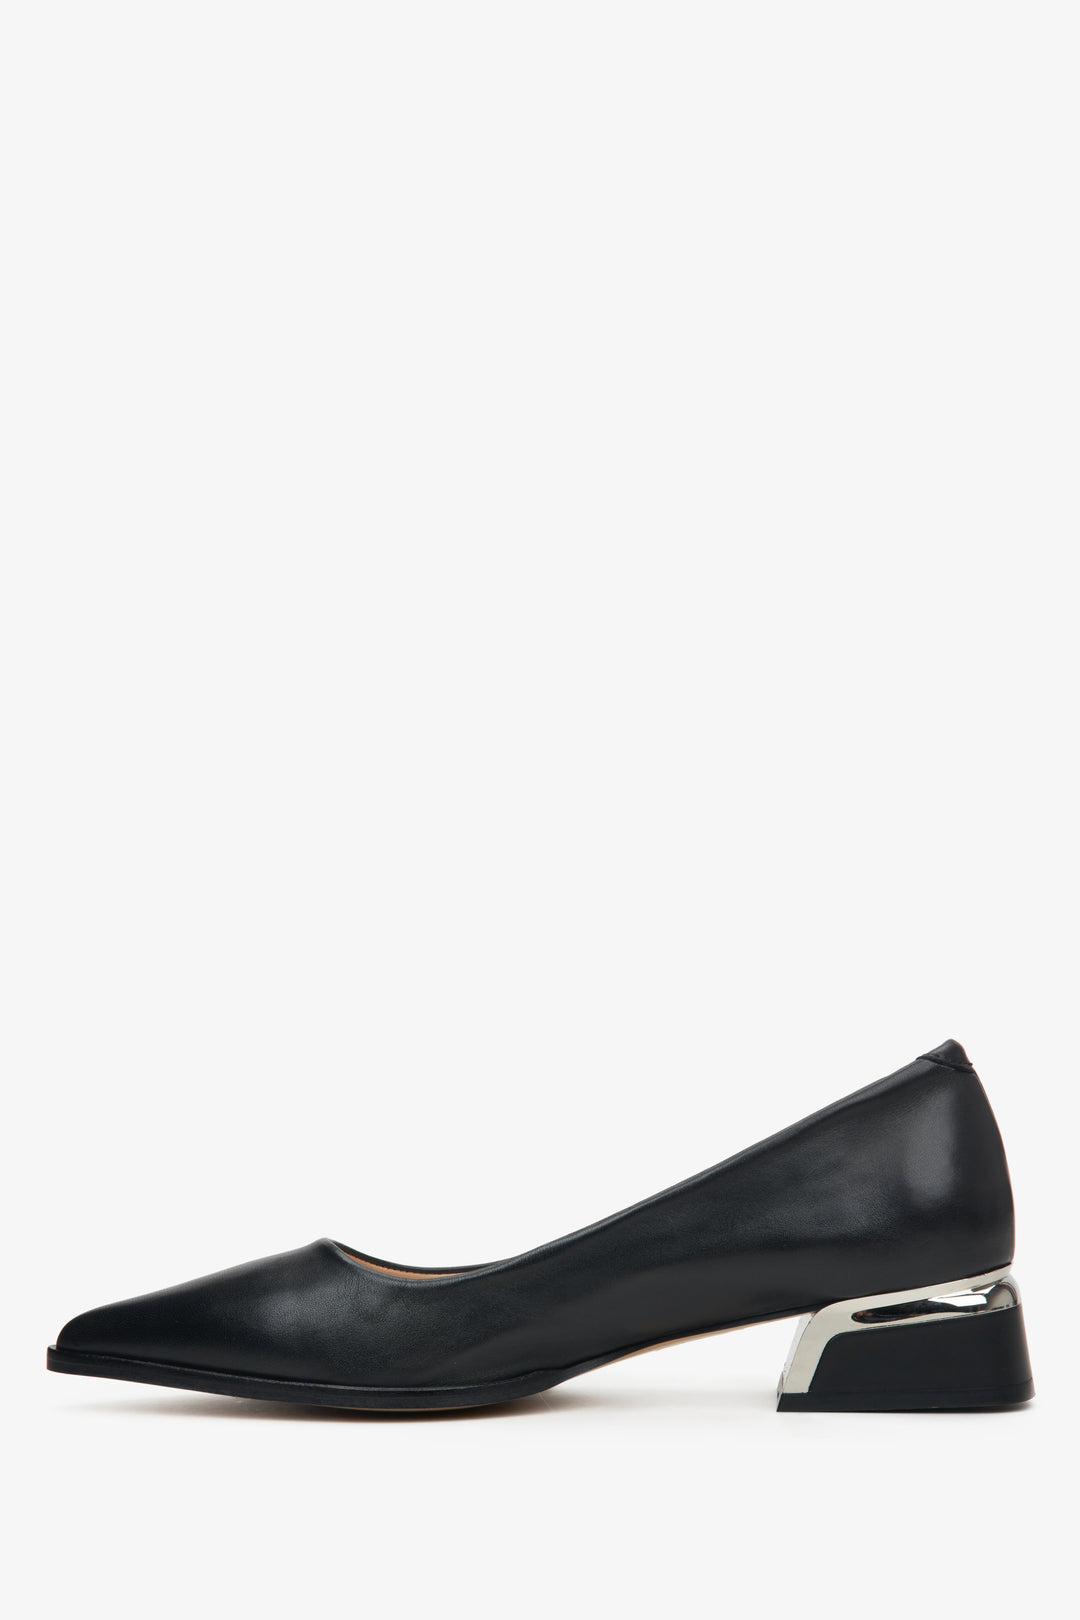 Women's black pumps by Estro - shoe profile.